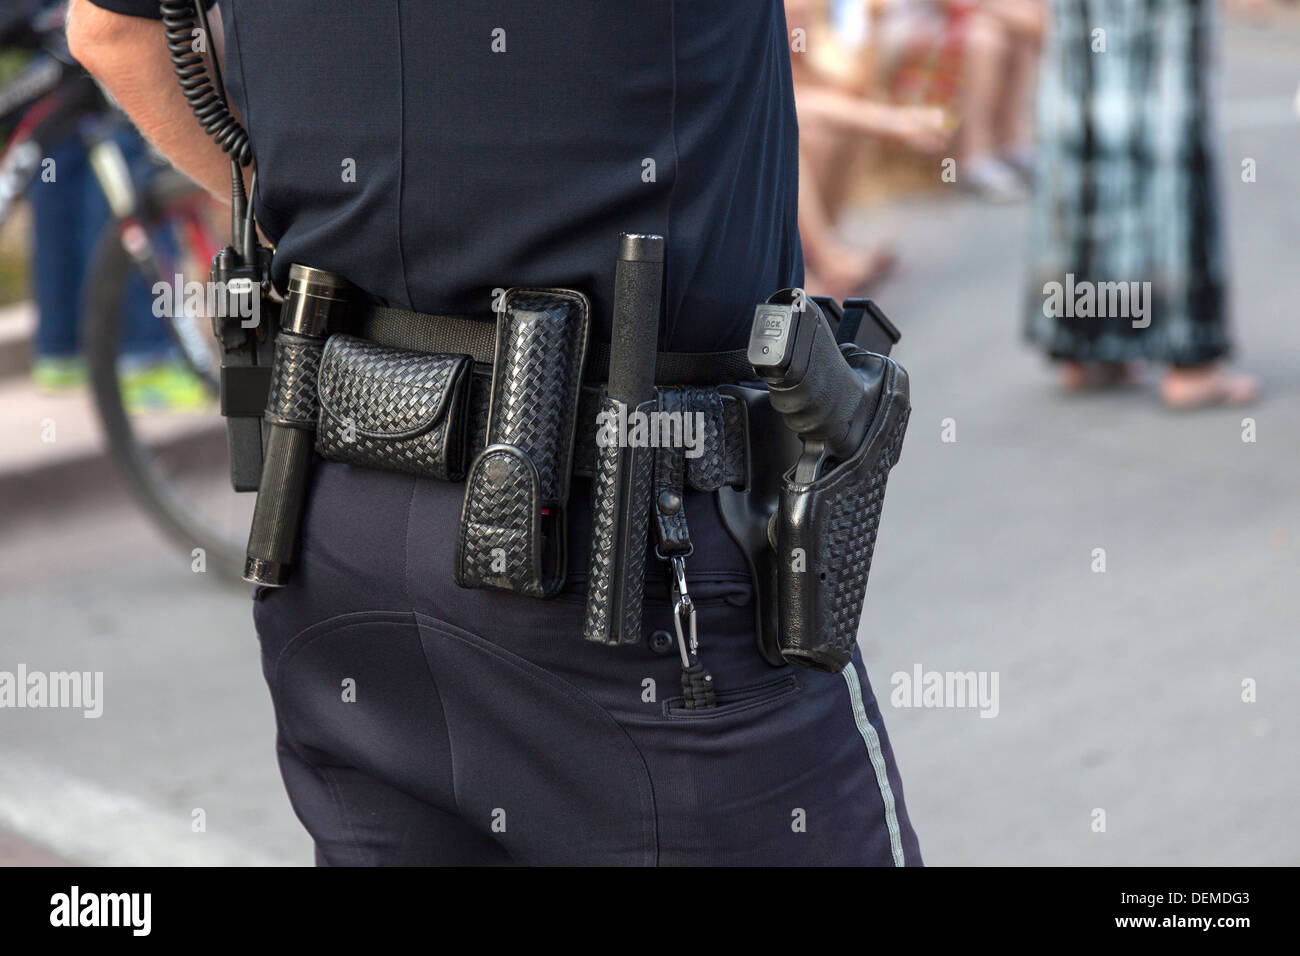 Ausstattung Gürtel eines Amerikaners uniformierte Polizeibüro zeigt seine  Pistole und Schlagstock, Colorado, USA Stockfotografie - Alamy